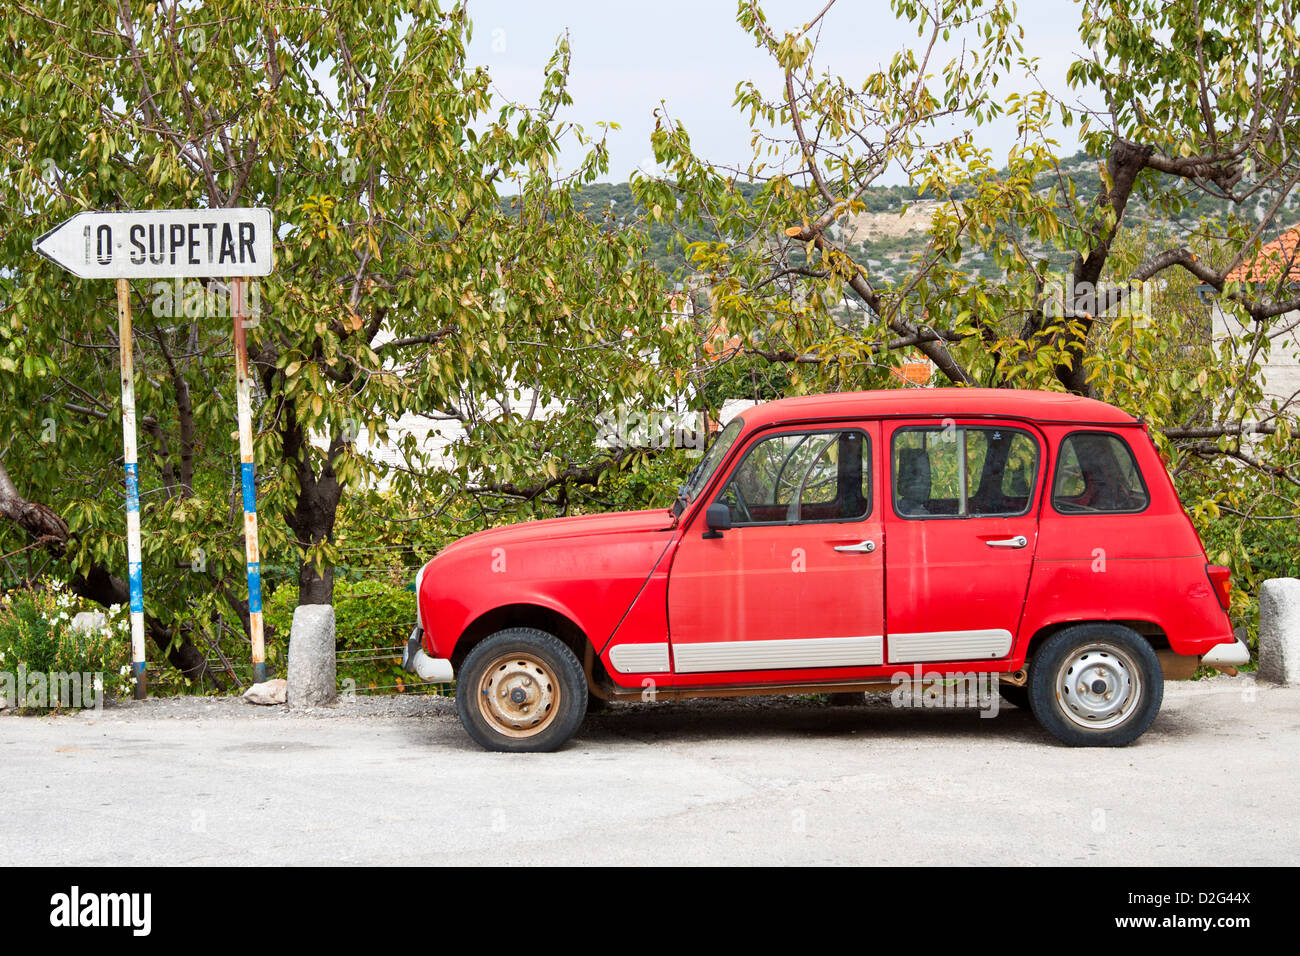 Un vecchio rosso Renault auto parcheggiate sul lato della strada, accanto ad un cartello che indica la direzione di Supetar sull'isola di Brac Foto Stock